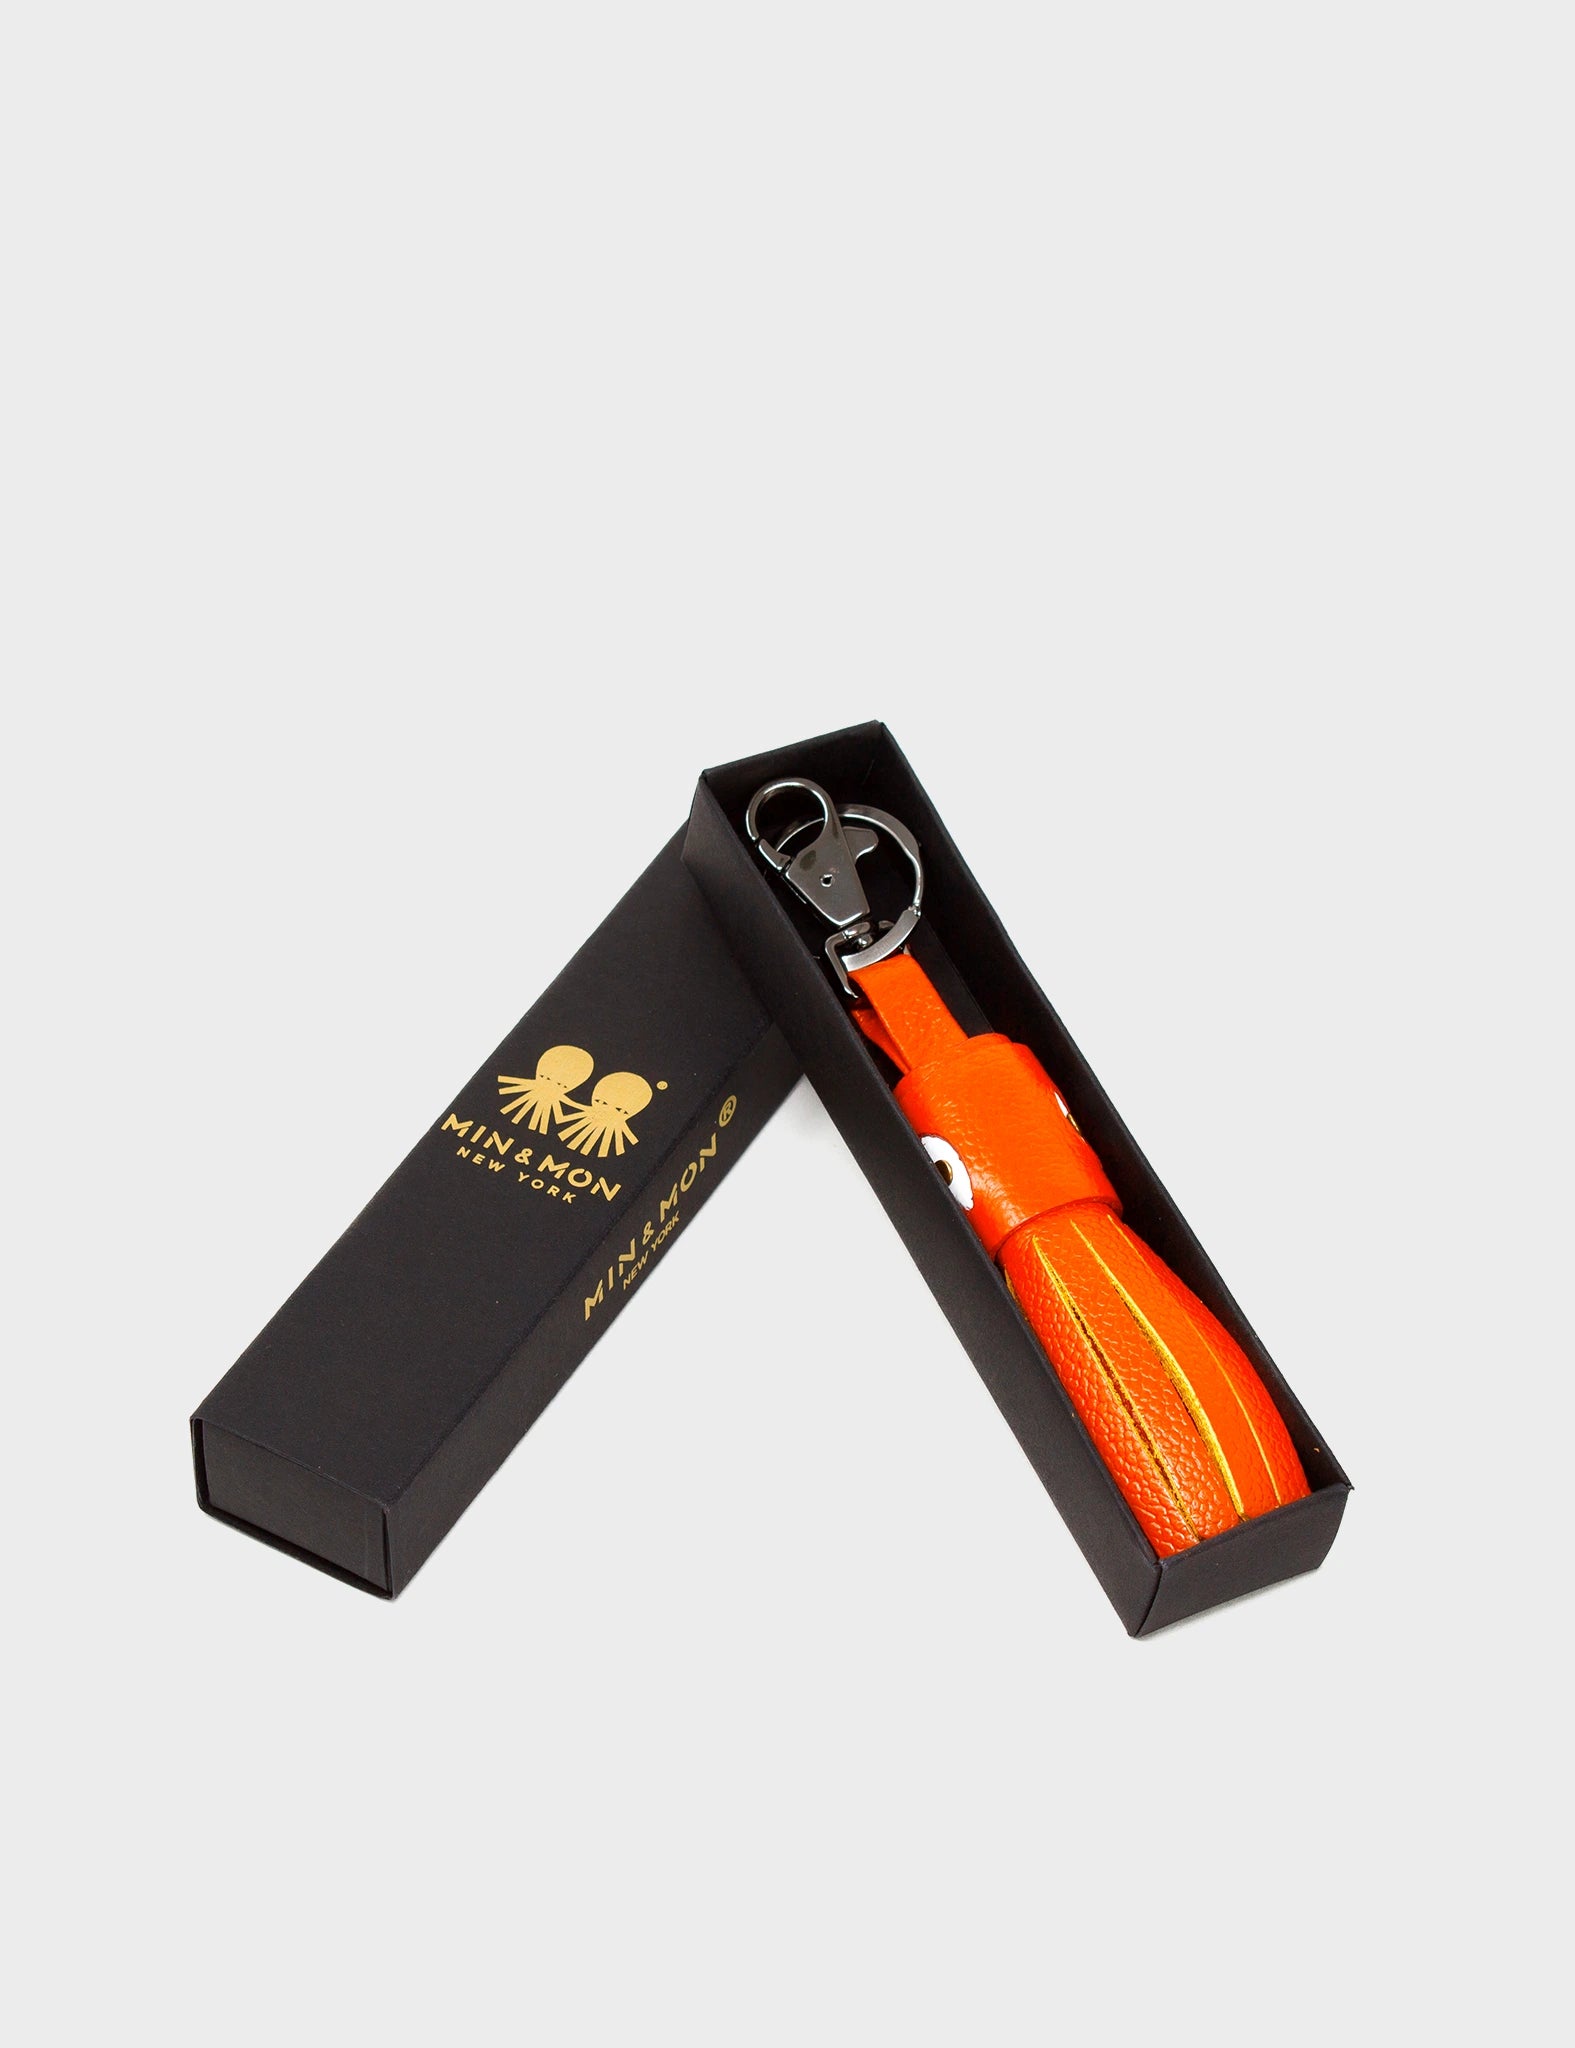 Calamari Charm - Neon Orange Leather Keychain - Box